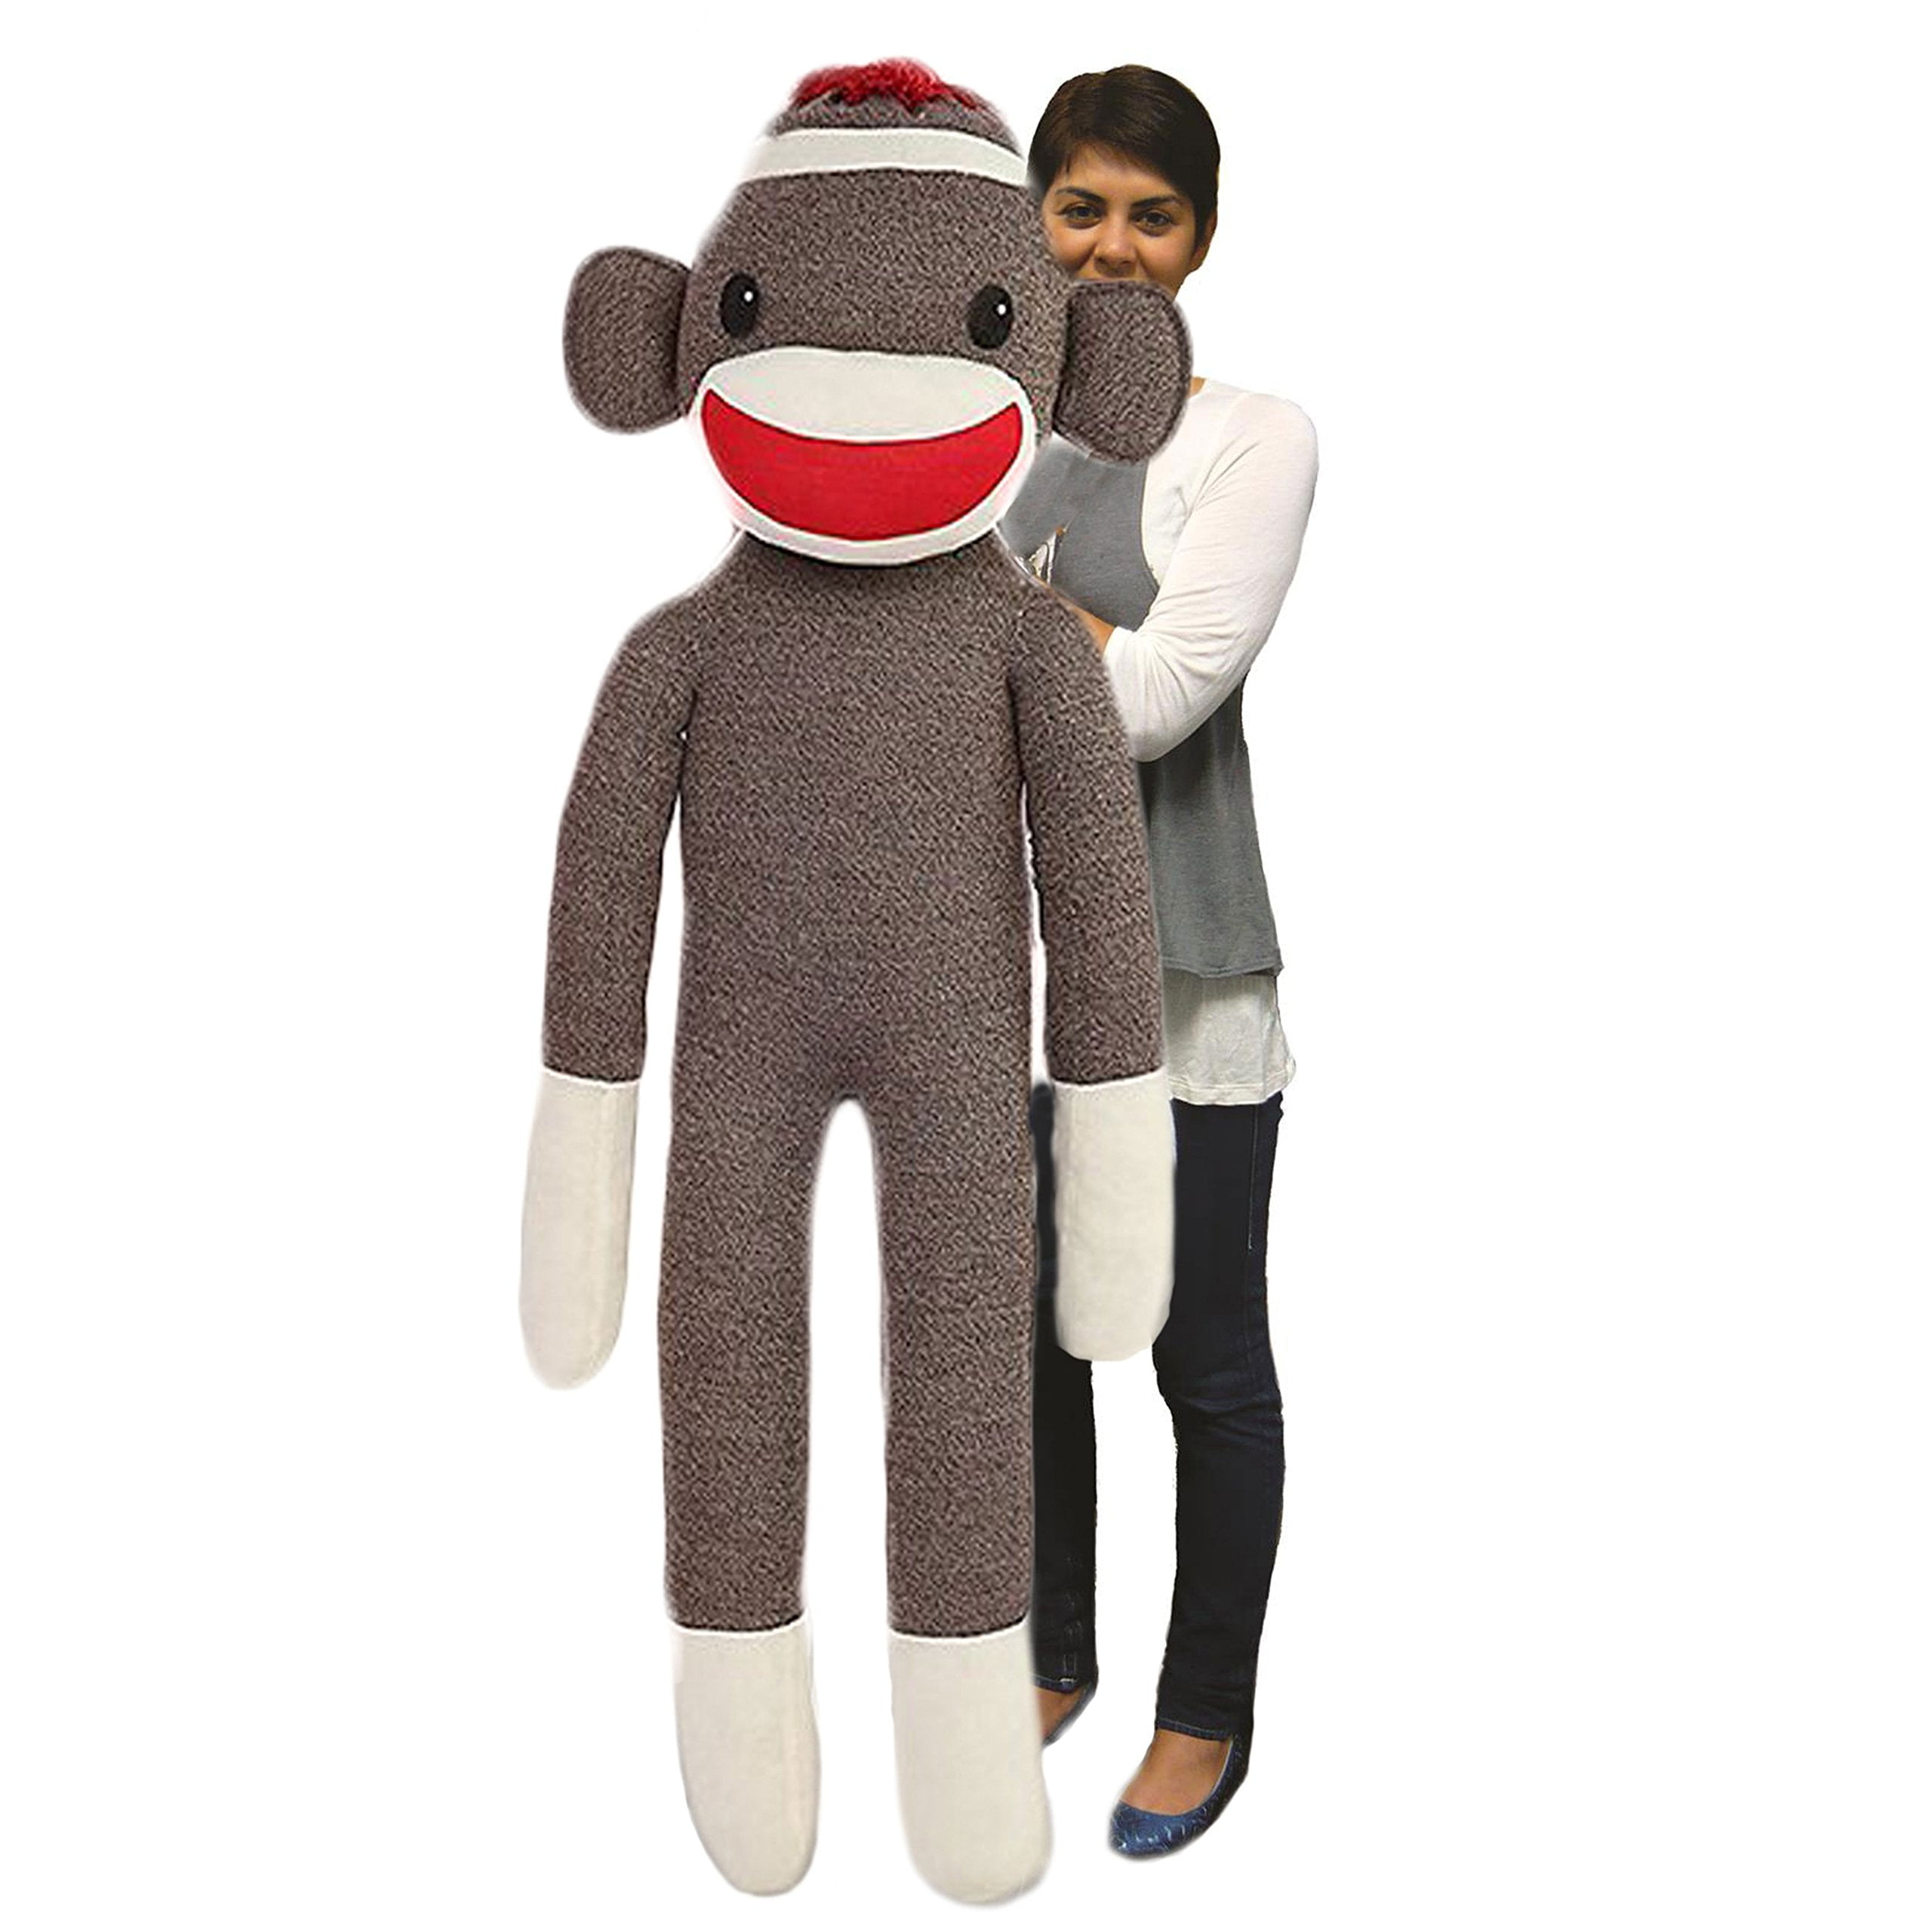 Plushland Giant Sock Monkey Stuffed Animal Life Size Huge 72 Inches ...